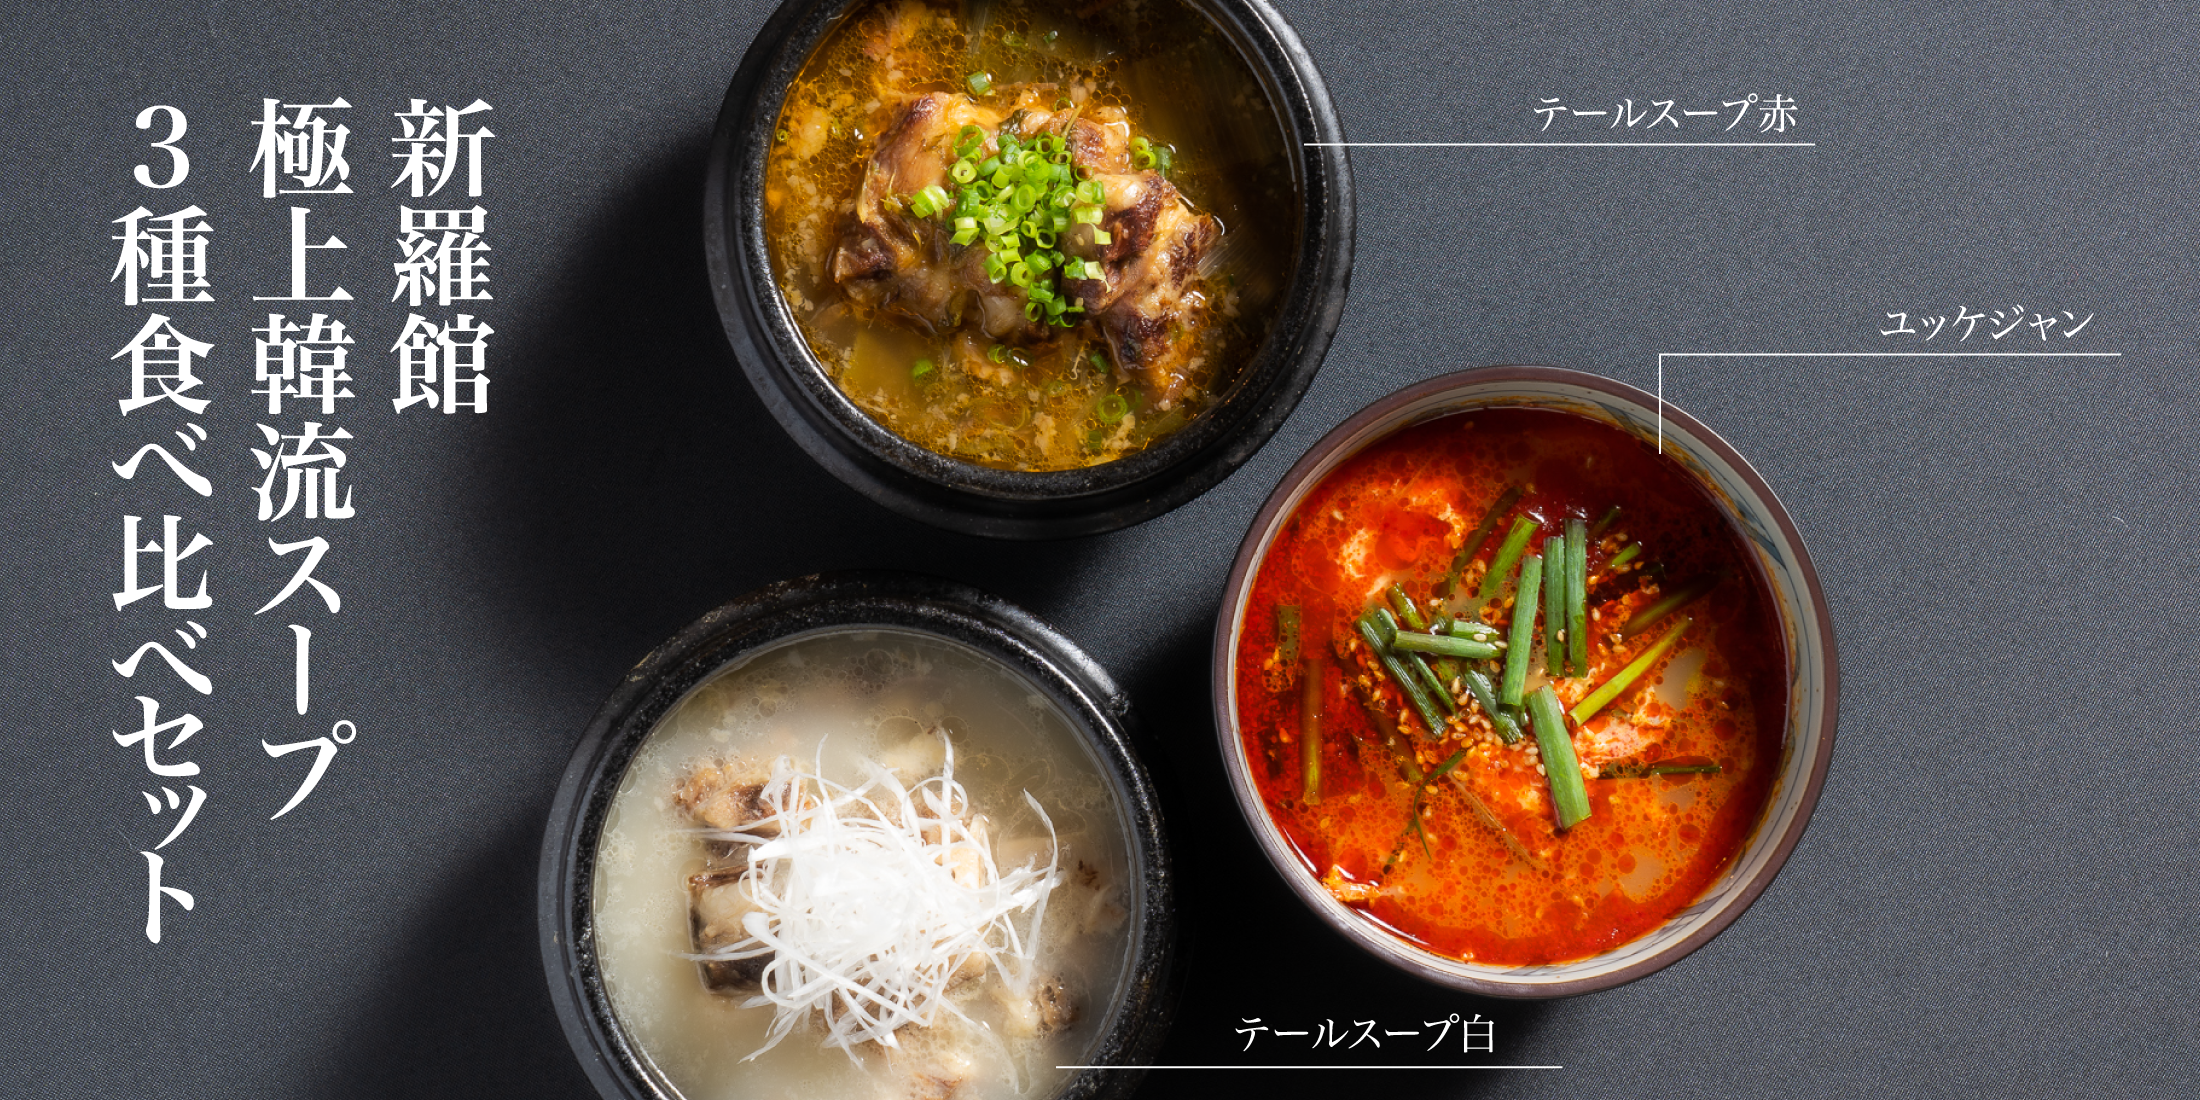 新羅館 極上韓流スープ 3種食べ比べセット